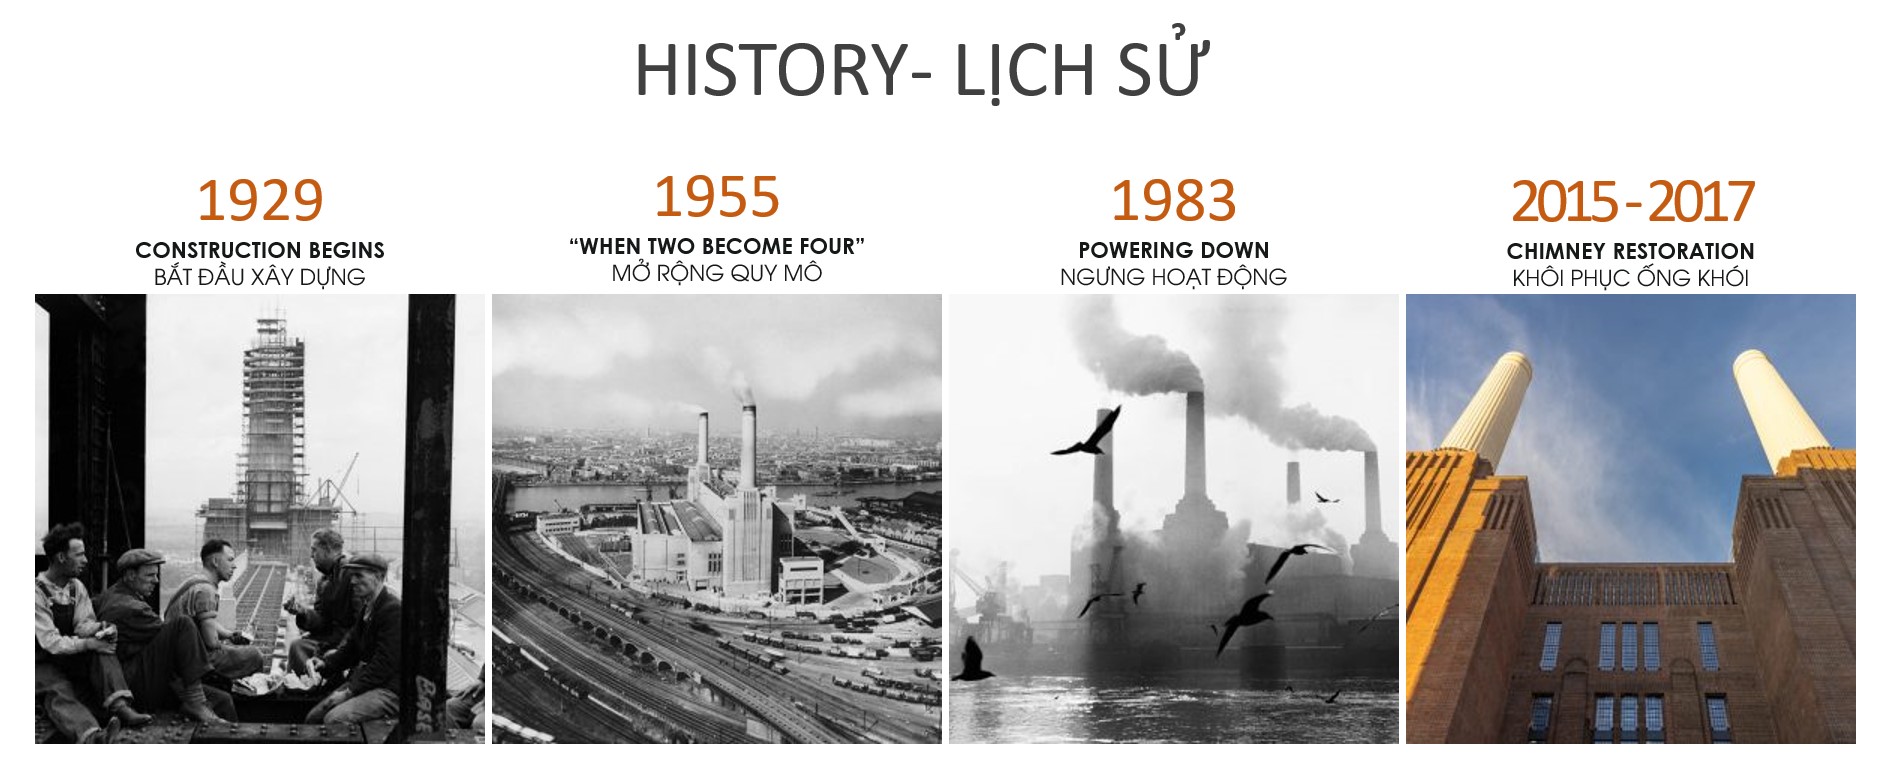 Hình 2: Lịch sử các giai đoạn của nhà máy